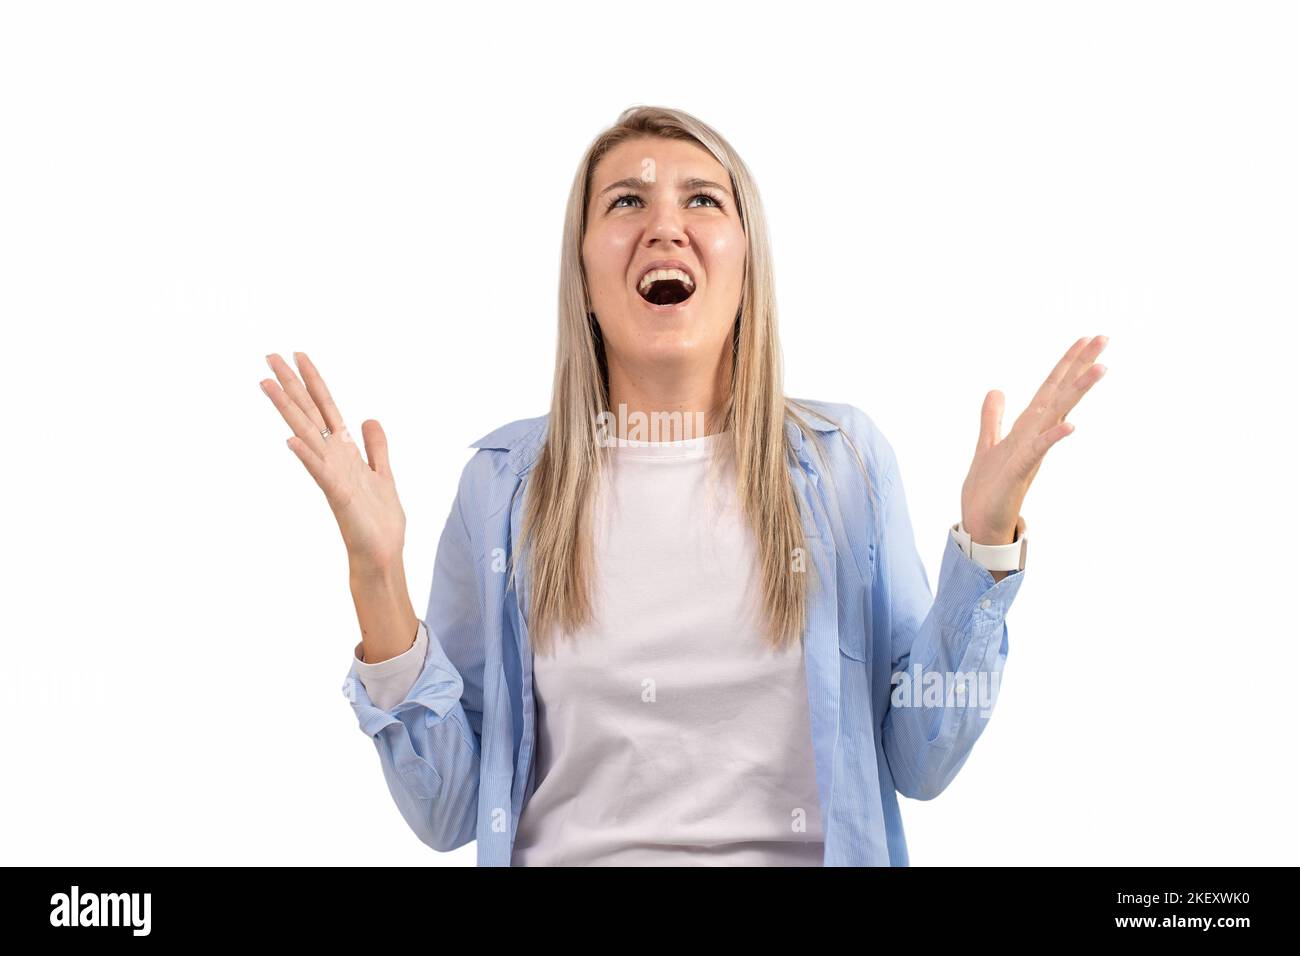 Woman emotion upset screaming isolated on white background Stock Photo